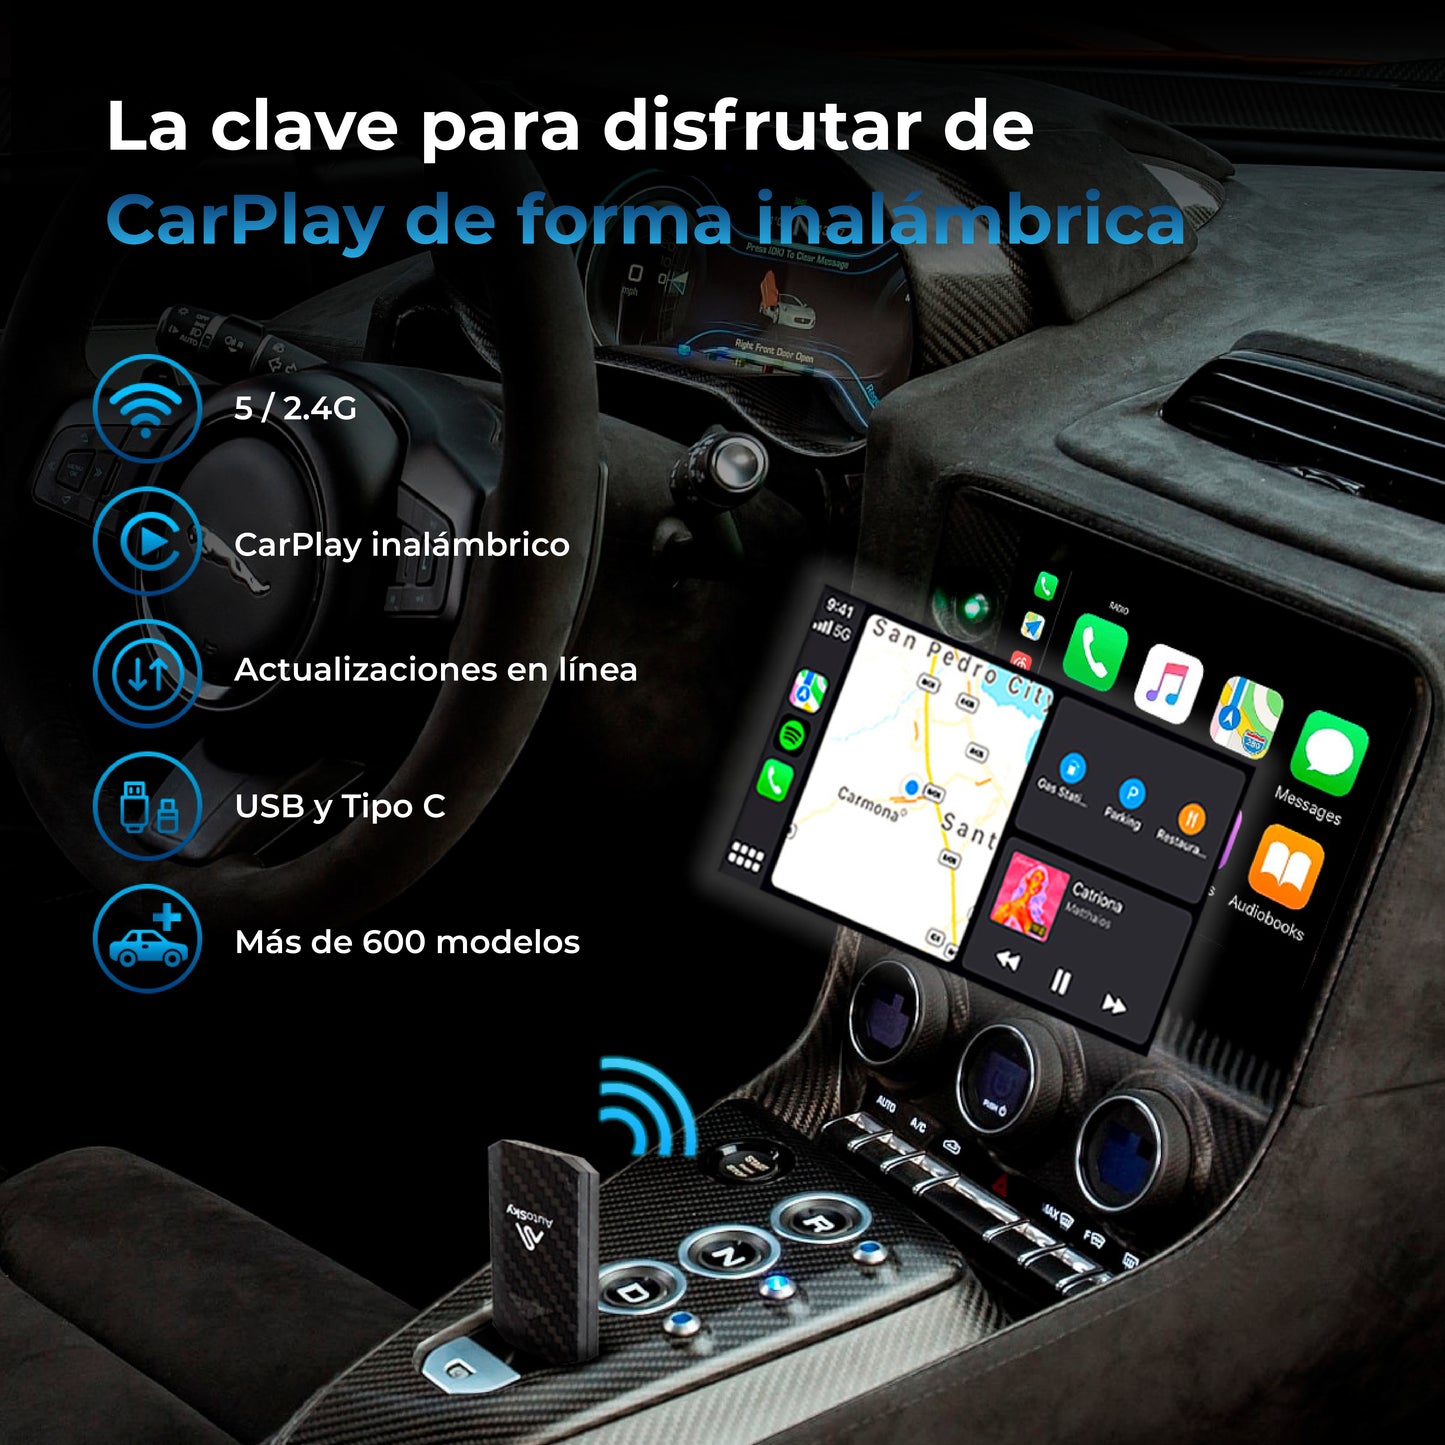 Adaptador de CarPlay inalámbrico AutoSky Pro Slim - Convierte tu CarPlay por cable en CarPlay inalámbrico - Instalación sencilla WUA-4 Co